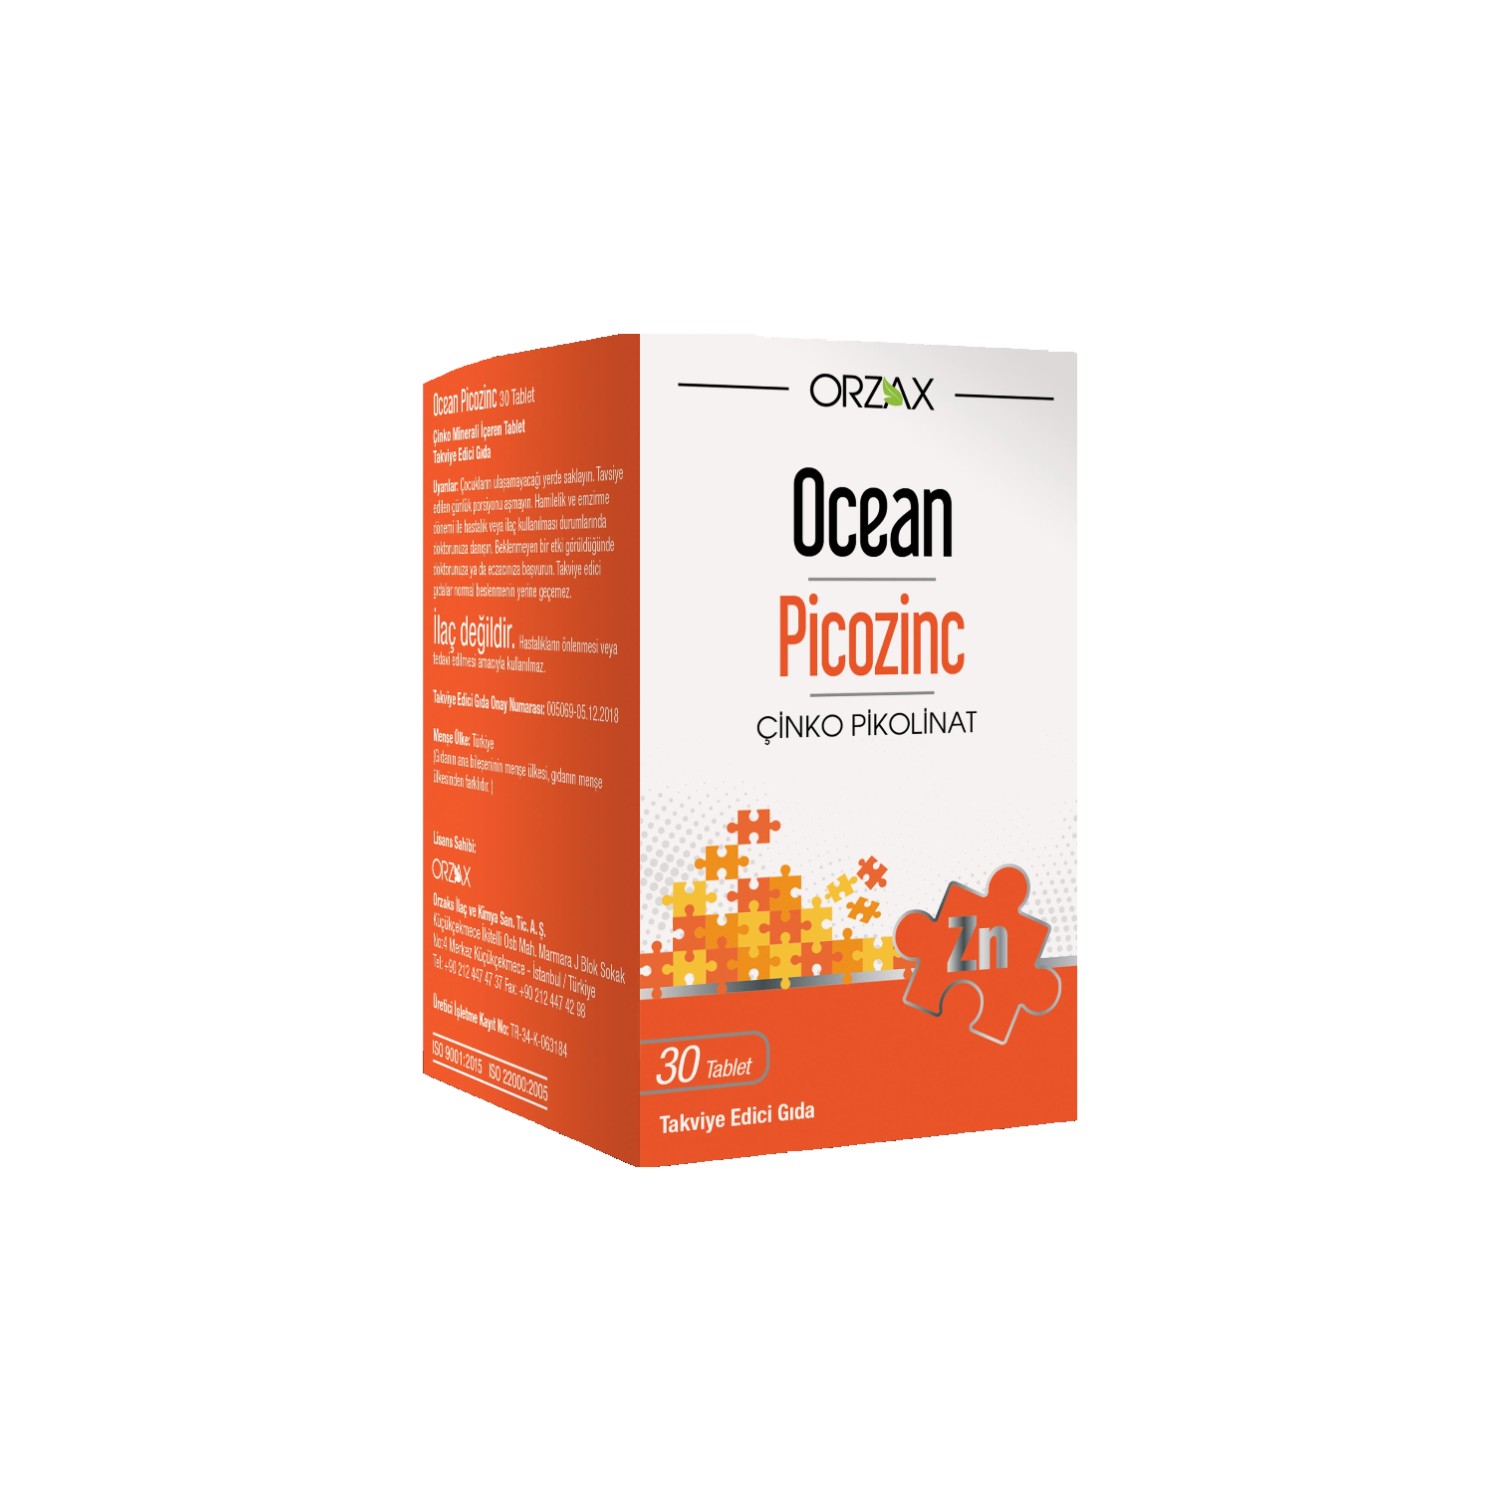 Пищевая добавка Orzax Ocean Picozinc Supplementary Food, 4 упаковки по 30 капсул фитофангер для истончения волос и ногтей пищевая добавка 120 таблеток phyto